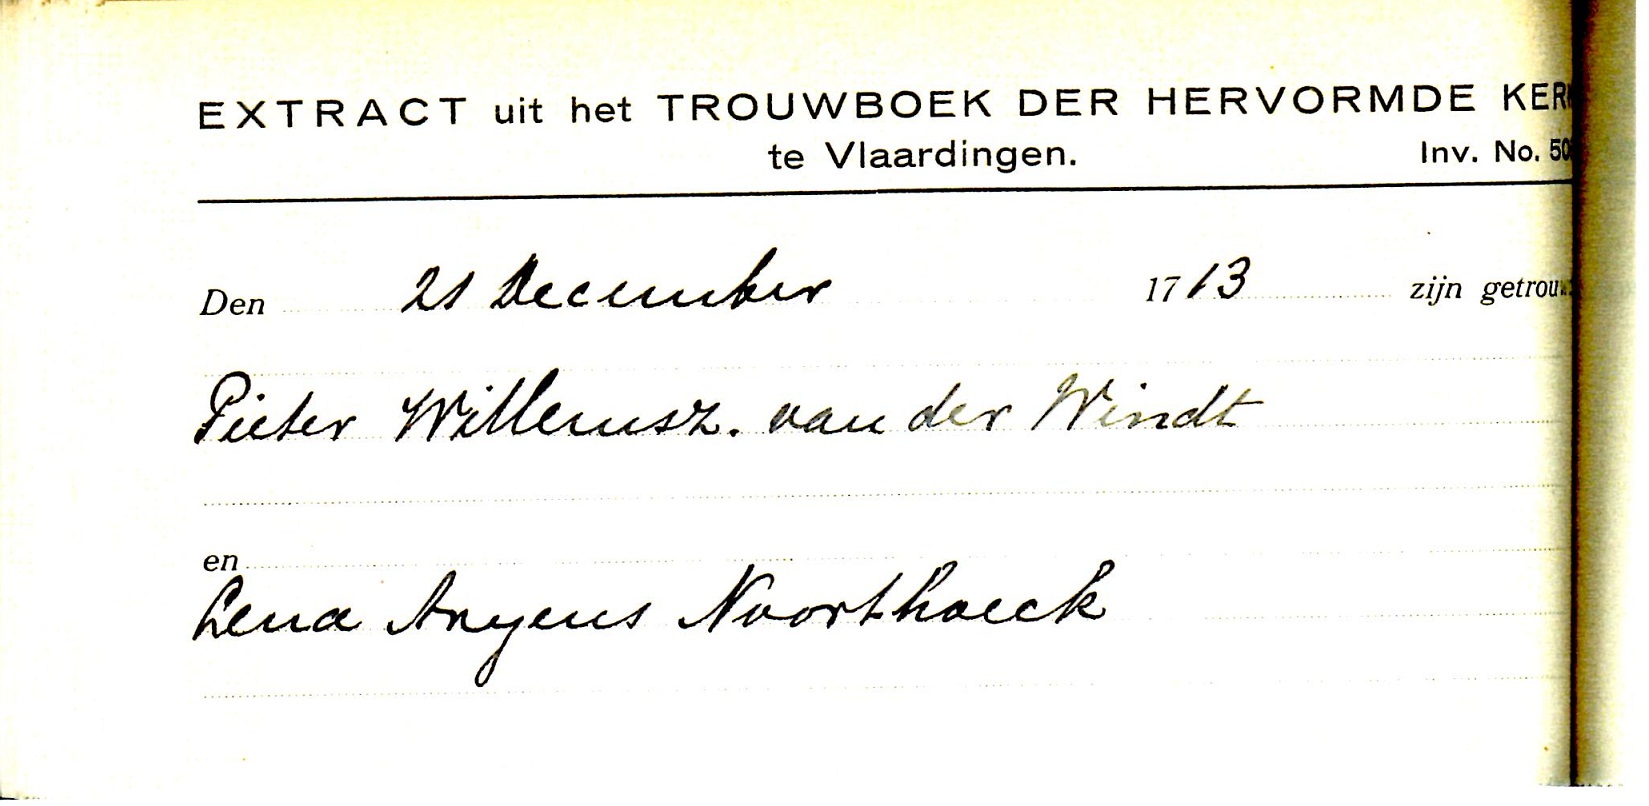 1713-12-21 Extract uit het Trouwboek van Pieter Willemsz van der Windt en Lena Arijnsd Noorthoek